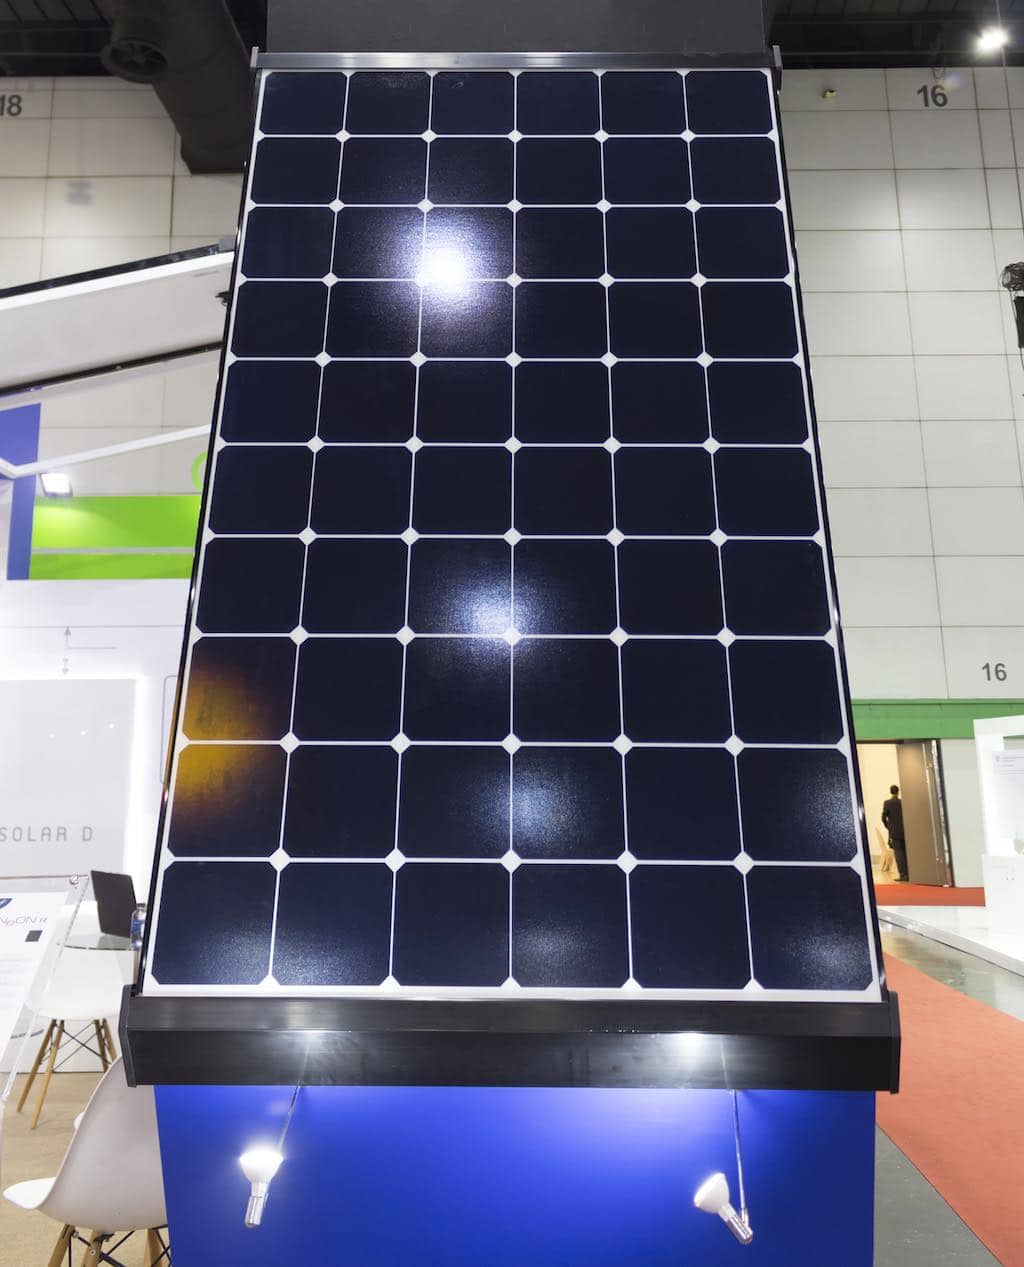 ¿Es posible cargar los paneles solares con luz artificial?